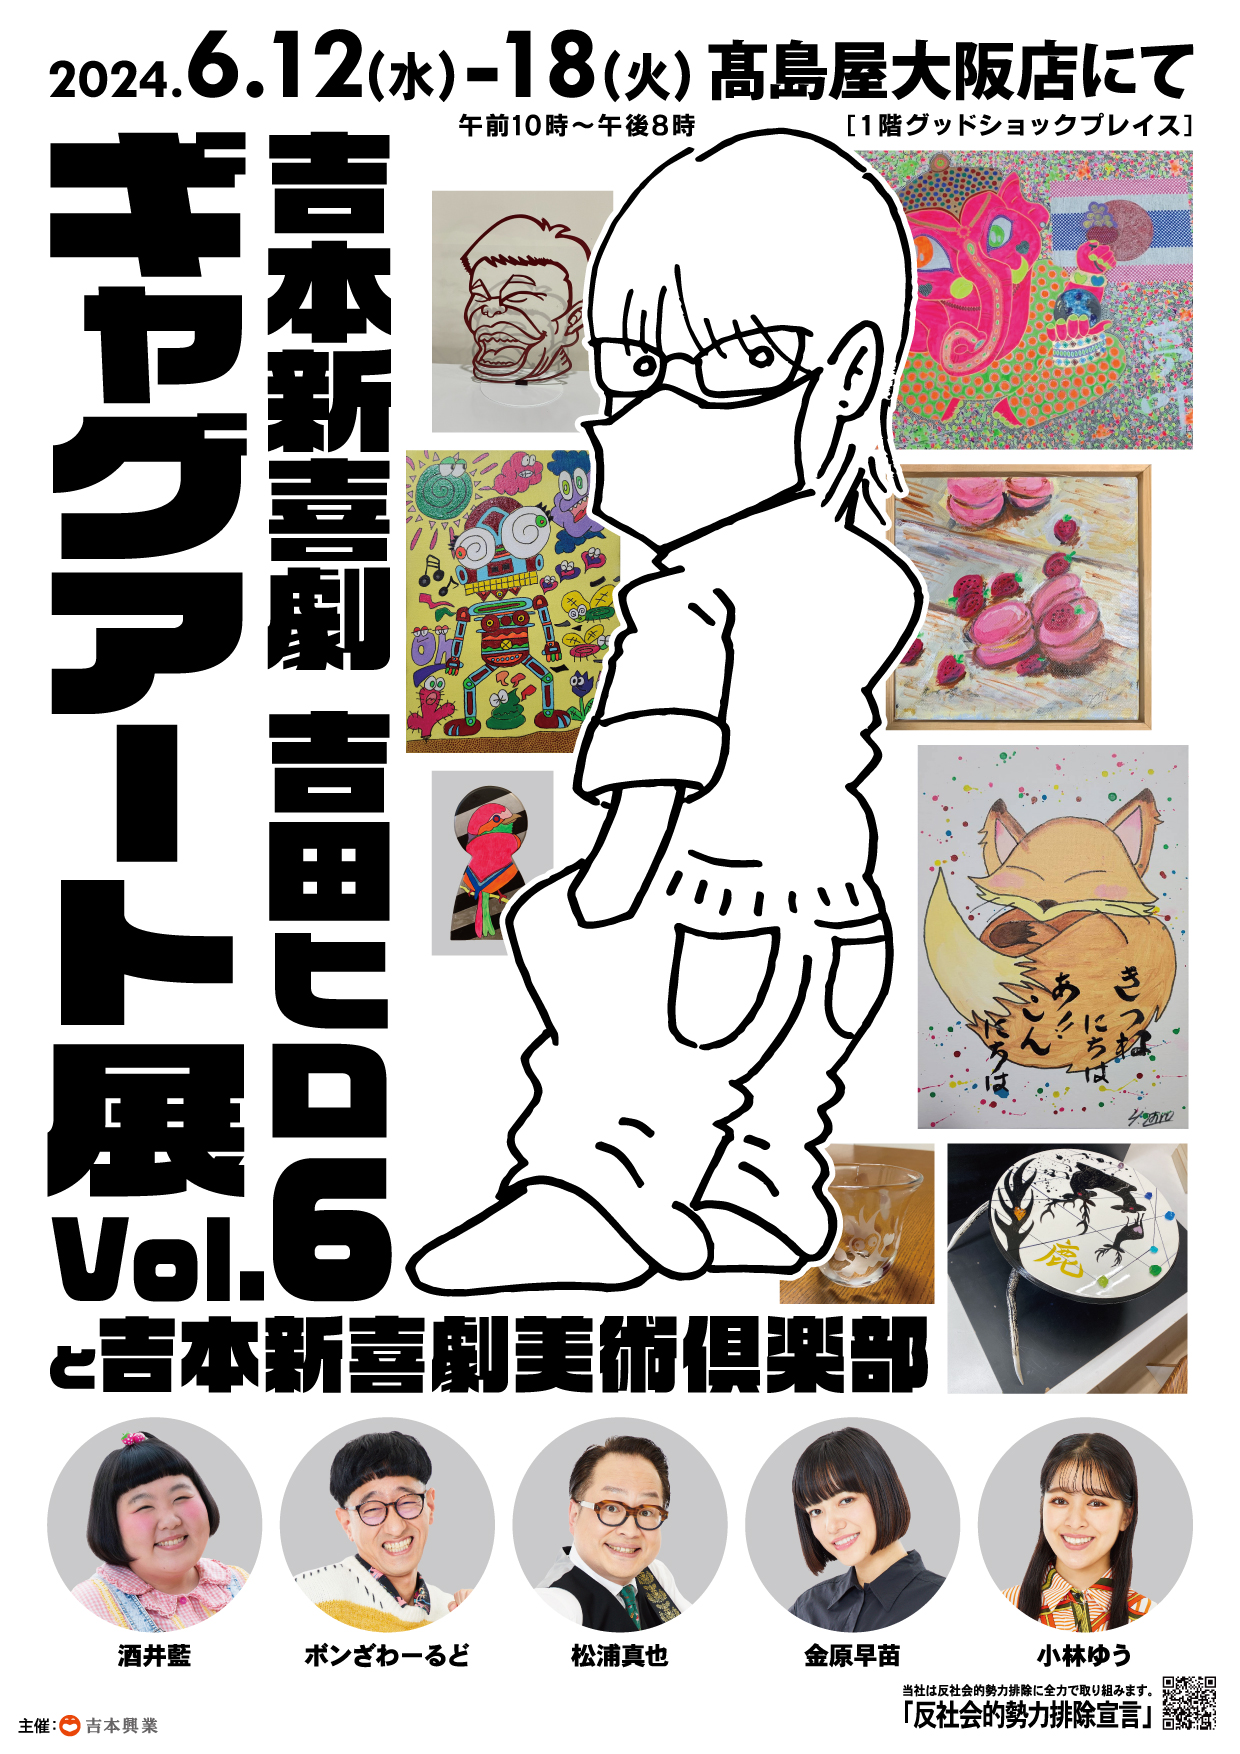 吉本新喜劇 吉田ヒロギャグアート展Vol6.と吉本新喜劇美術俱楽部